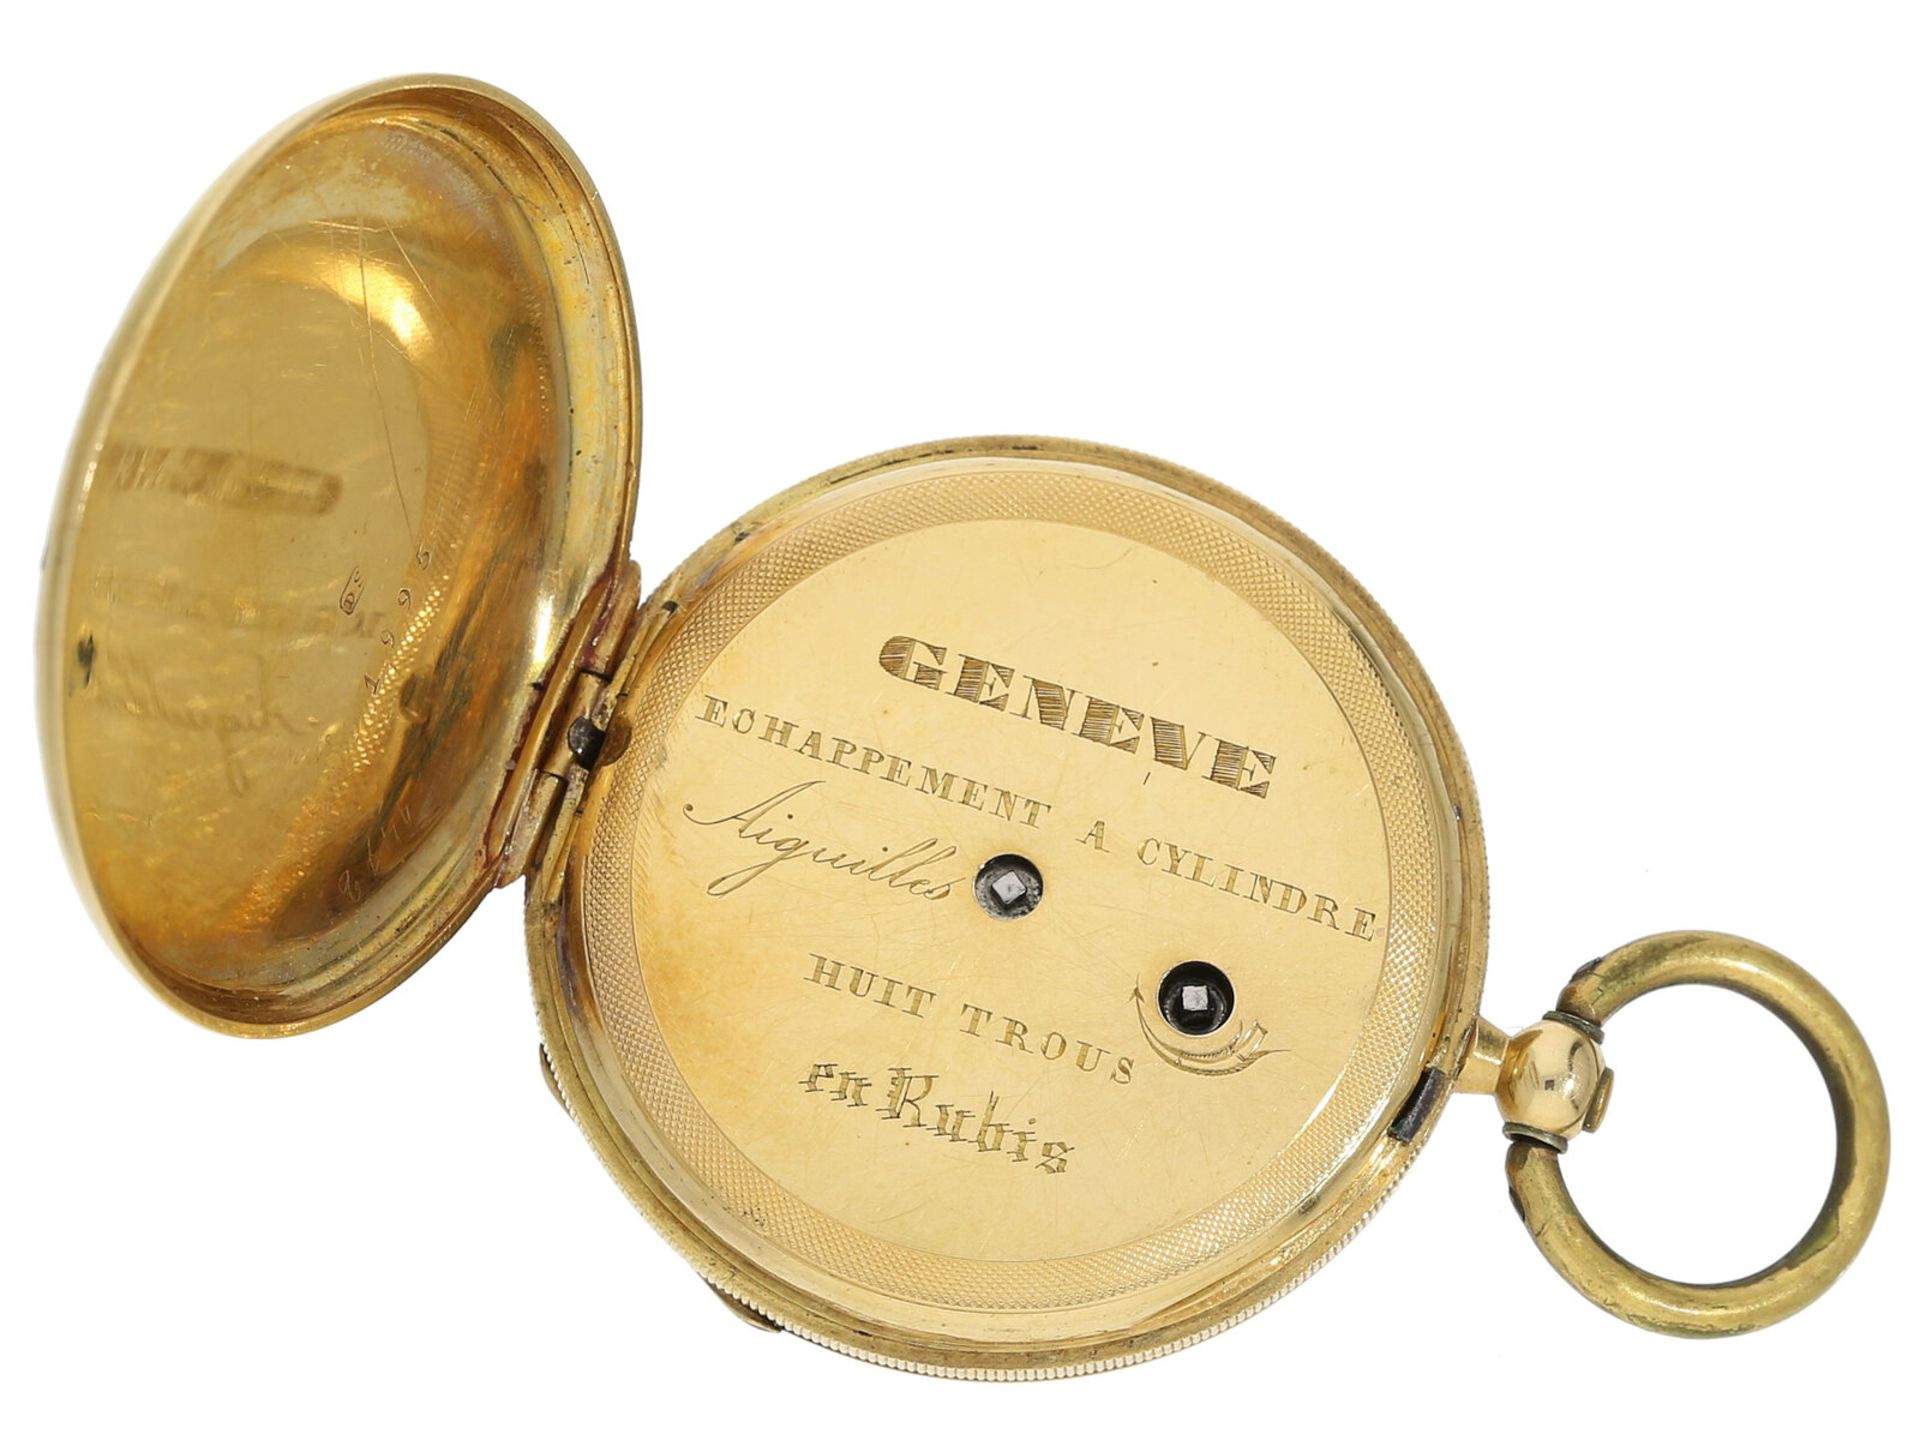 Taschenuhr: Gold/Emaille-Lepine von feiner Qualität, Genf um 1850 - Image 3 of 4